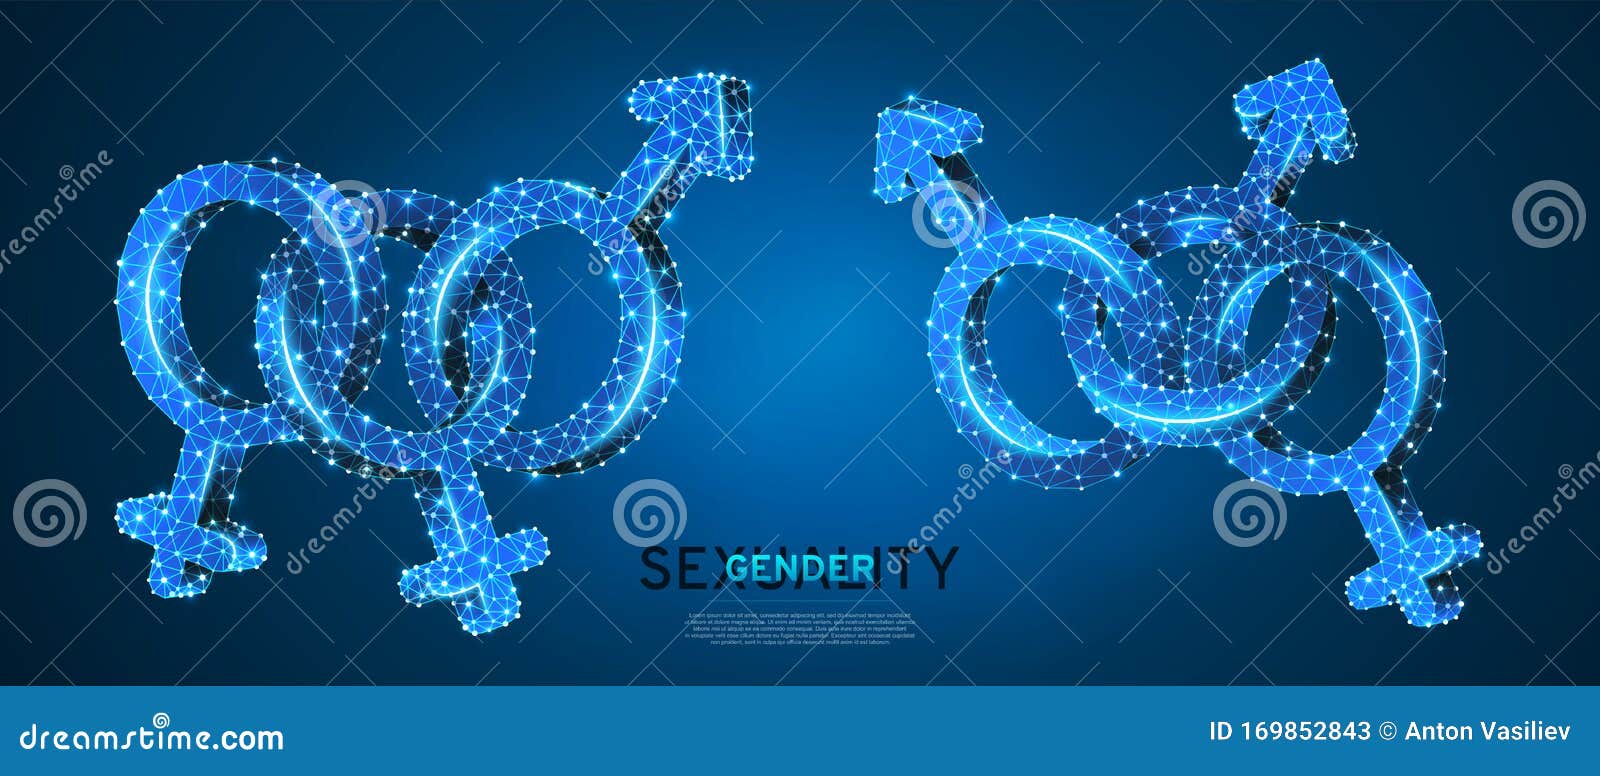 Bisexual Pride Gender Symbol Set Low Poly Wireframe Digital 3d